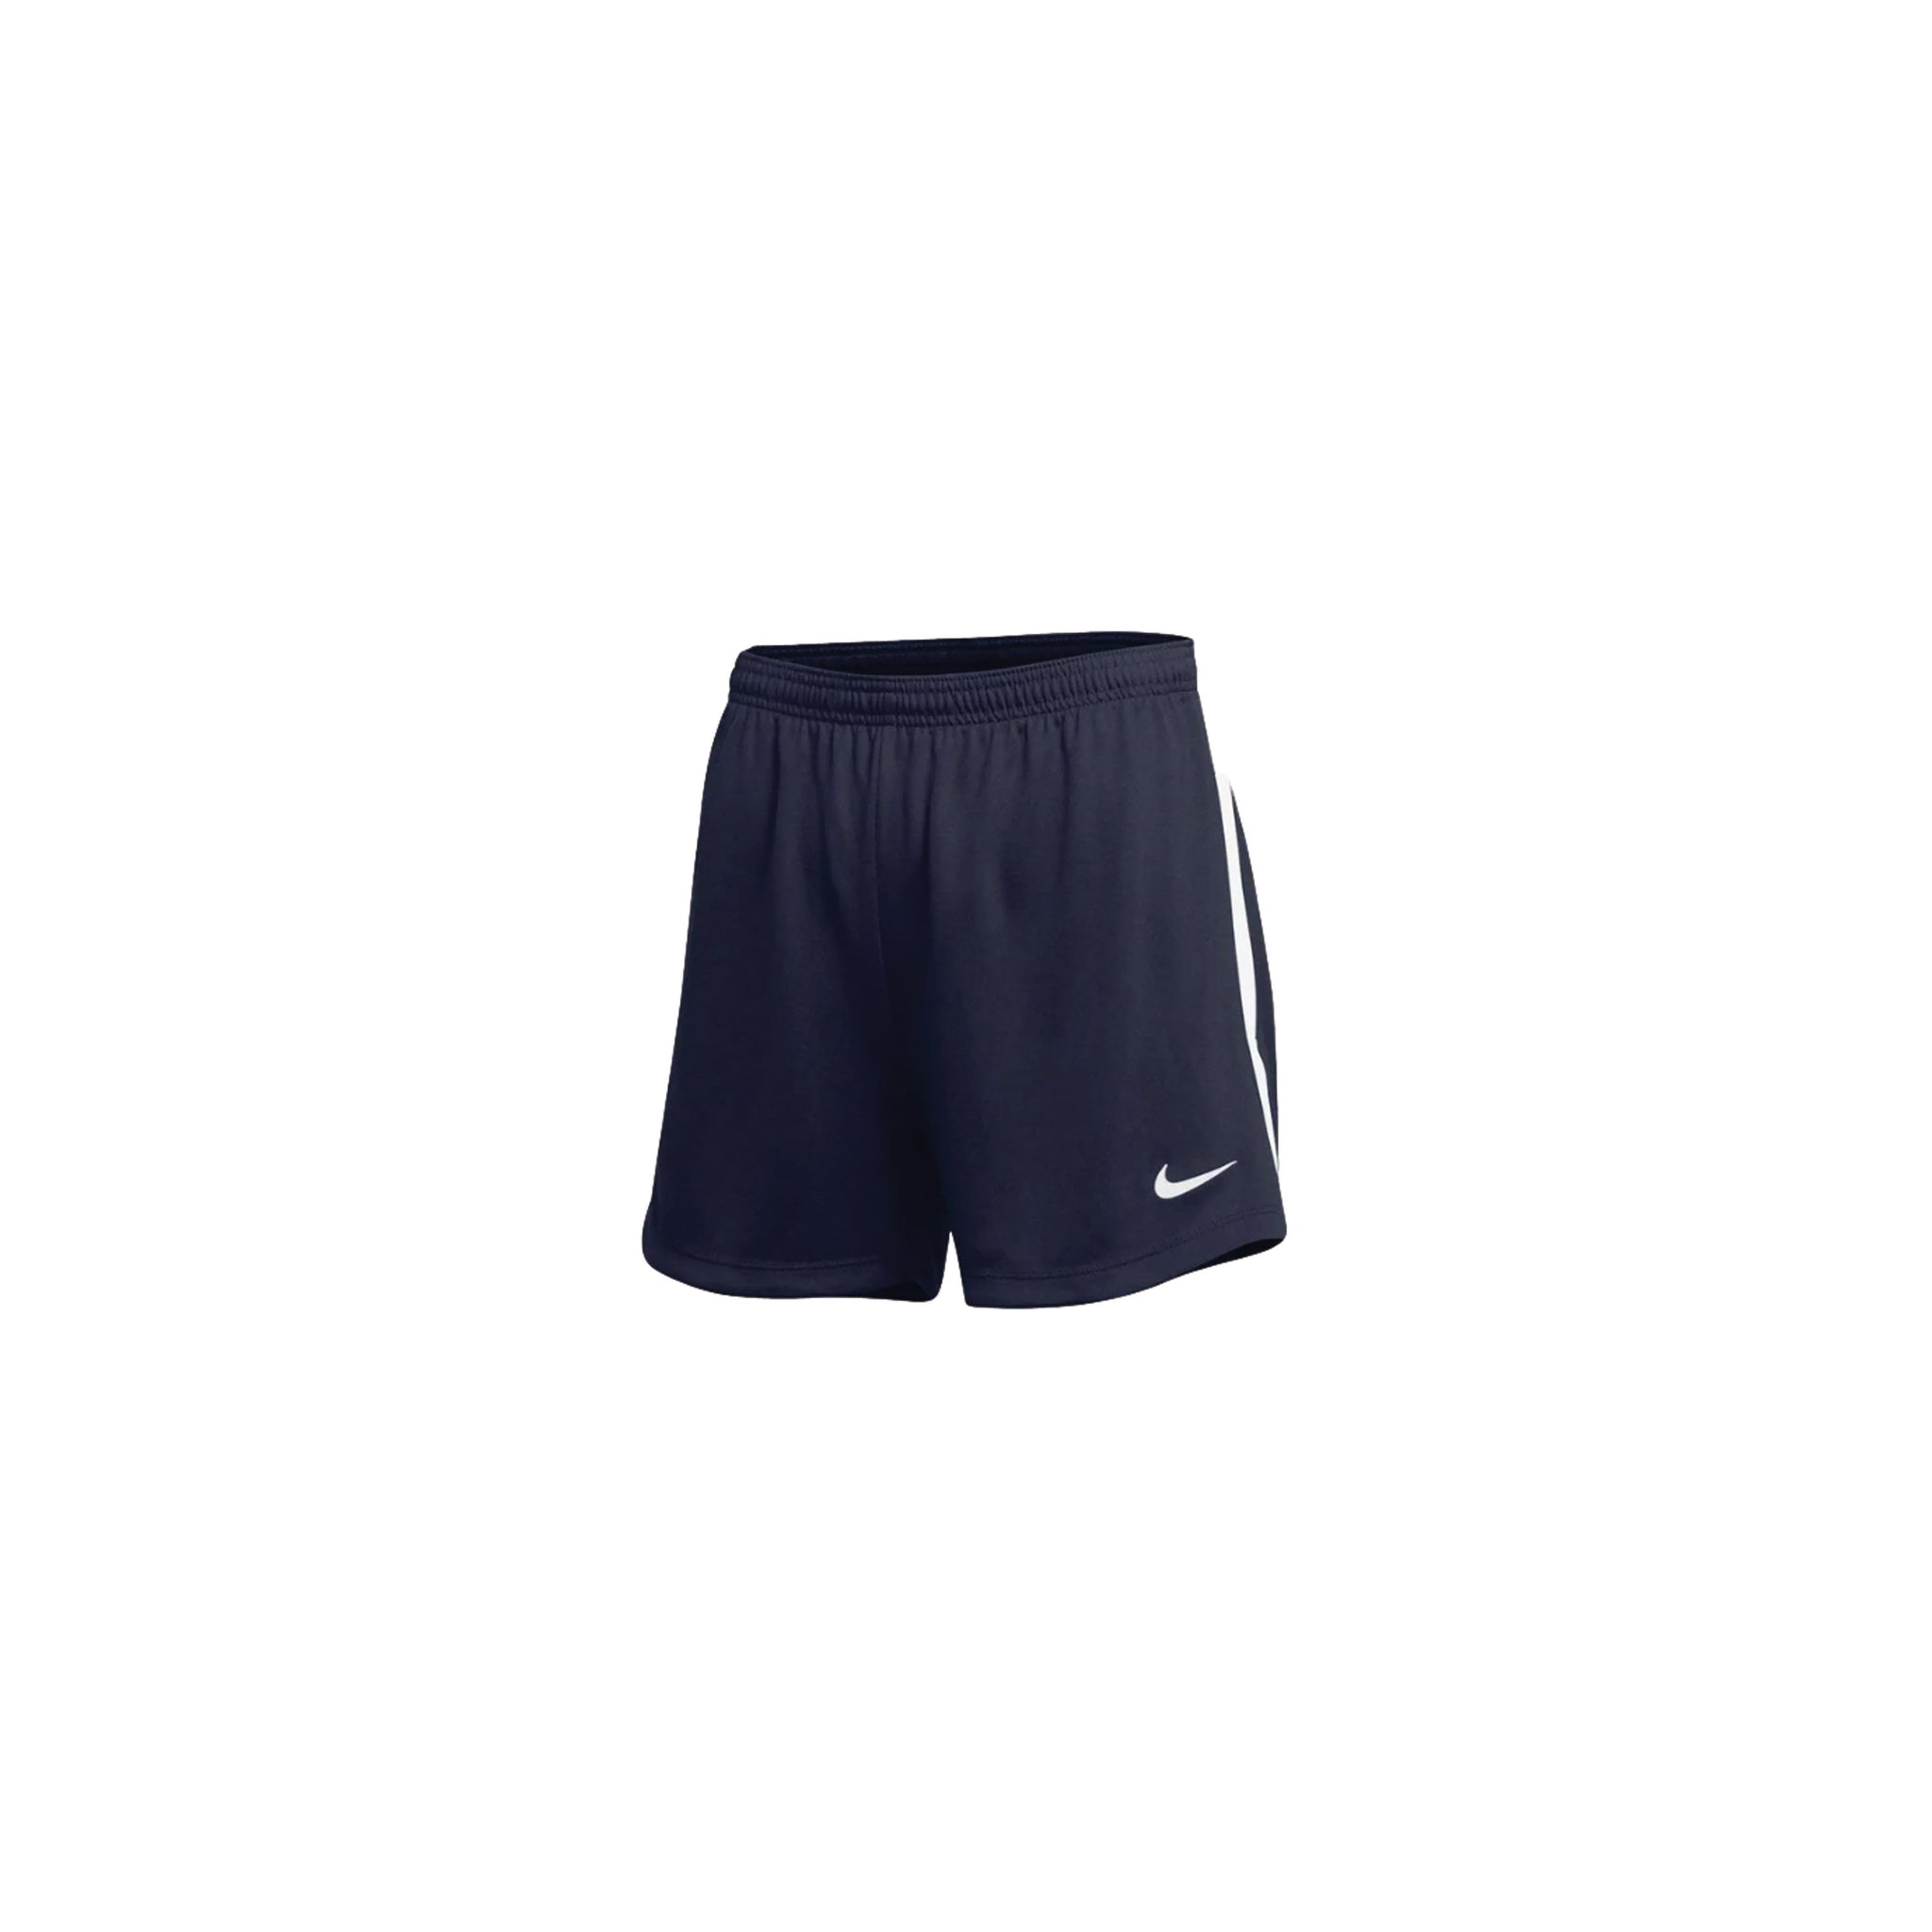 NIKE Classic Hertha II (W) Shorts